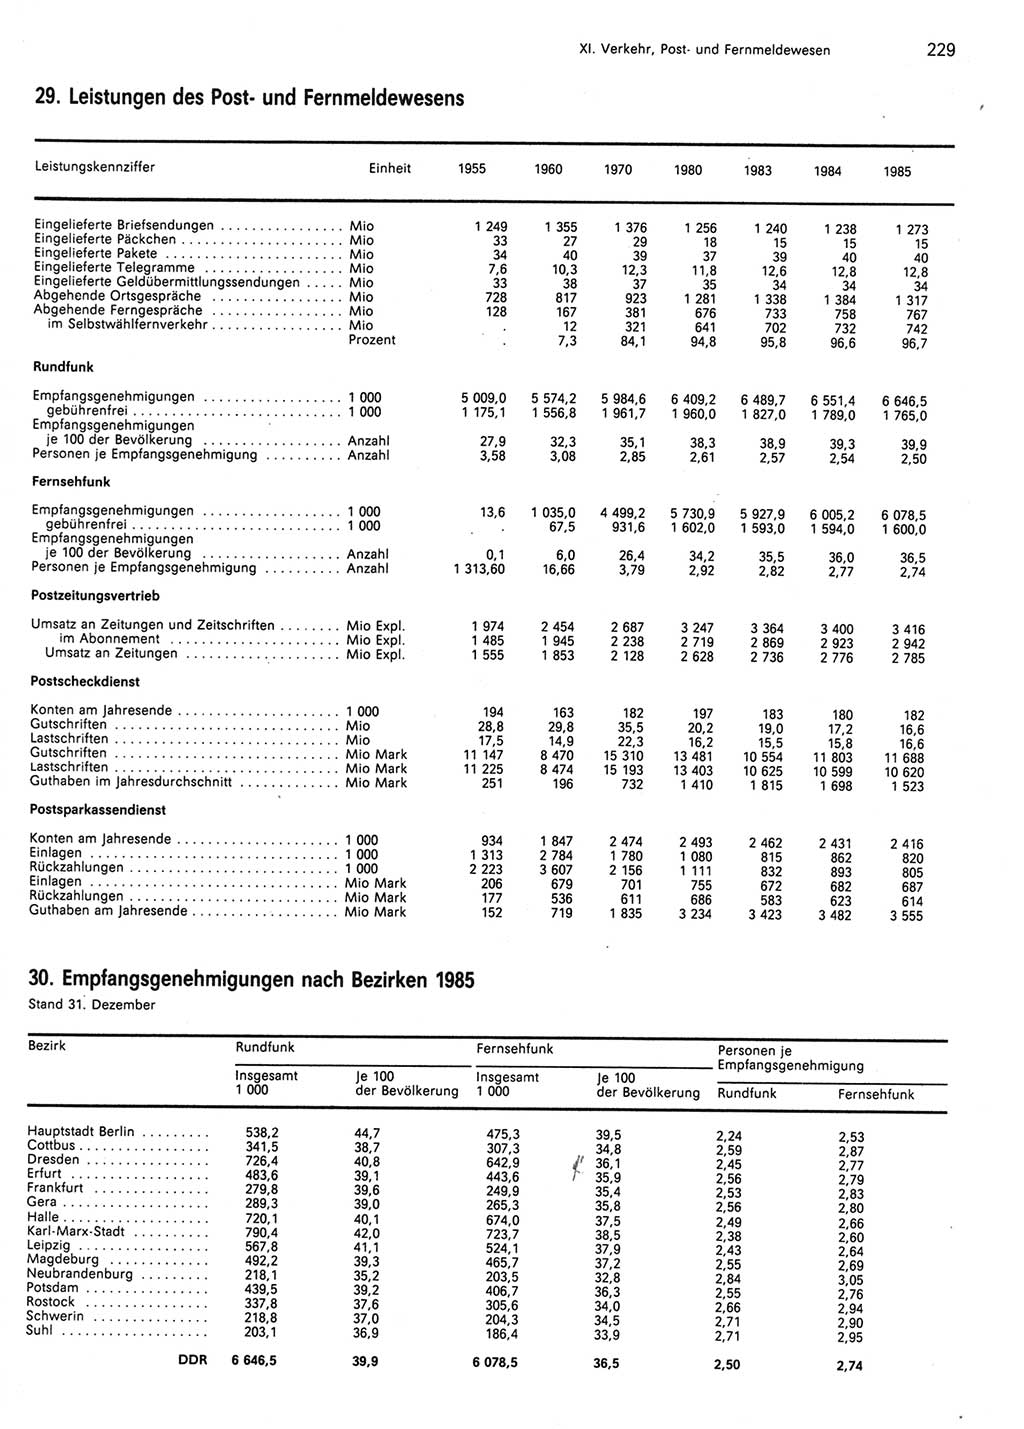 Statistisches Jahrbuch der Deutschen Demokratischen Republik (DDR) 1986, Seite 229 (Stat. Jb. DDR 1986, S. 229)